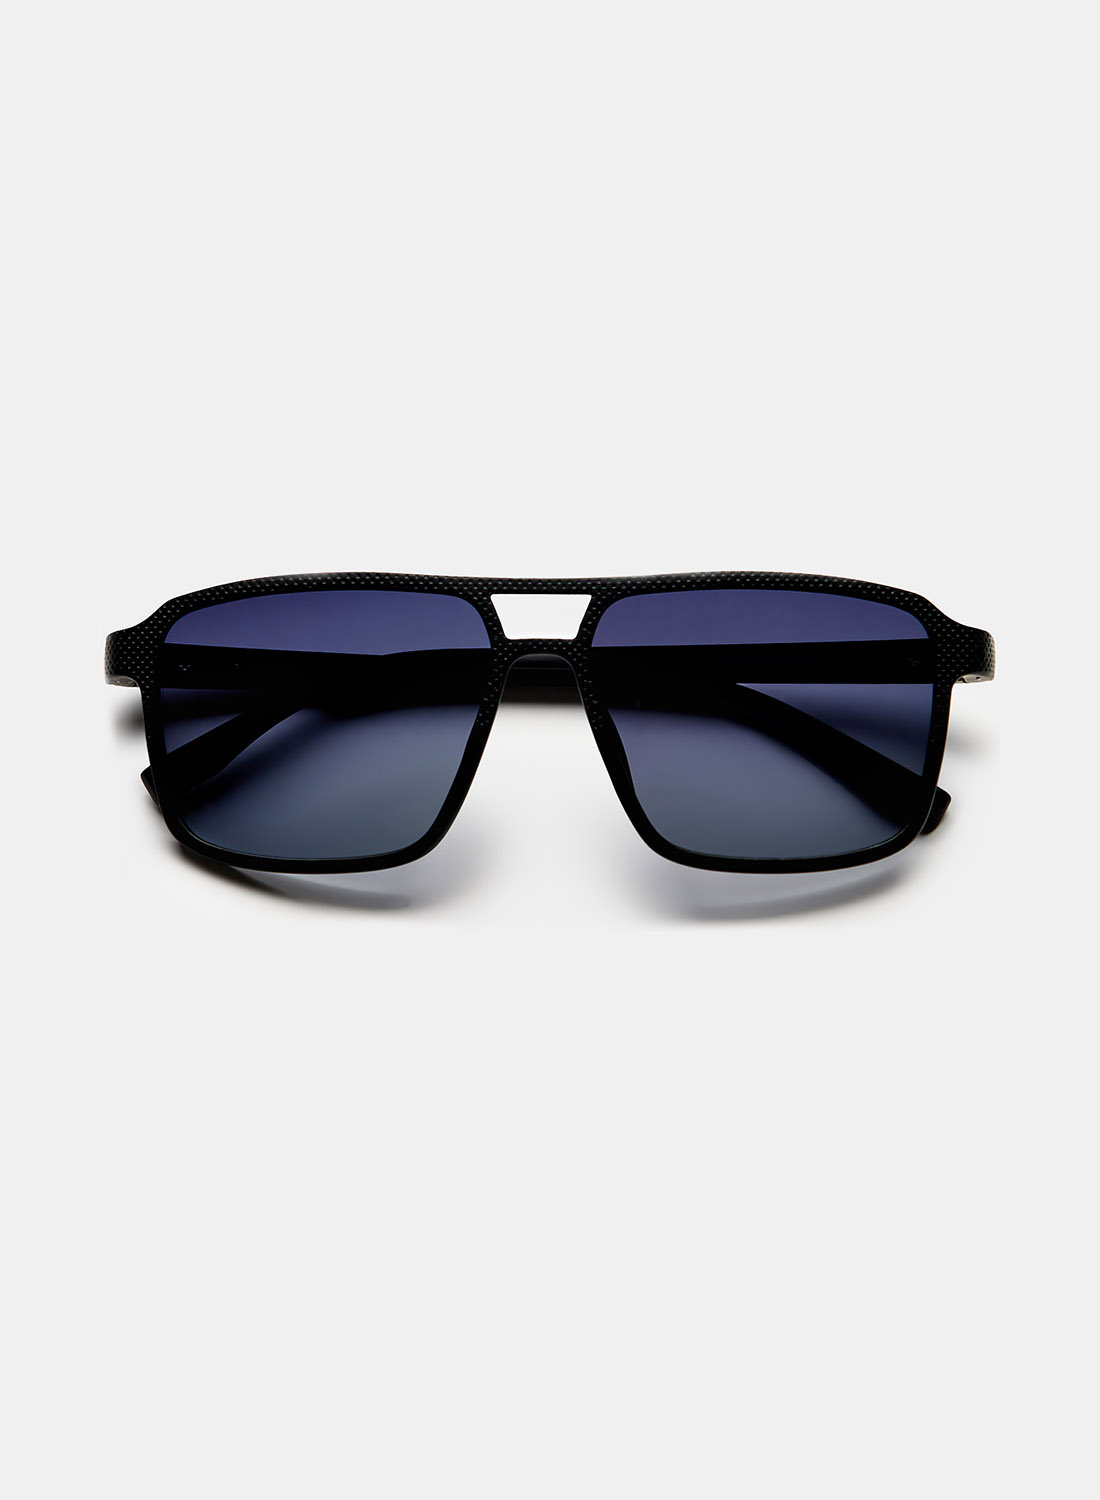 Солнцезащитные очки мужские Ralf Ringer АУГЧ070800 синие